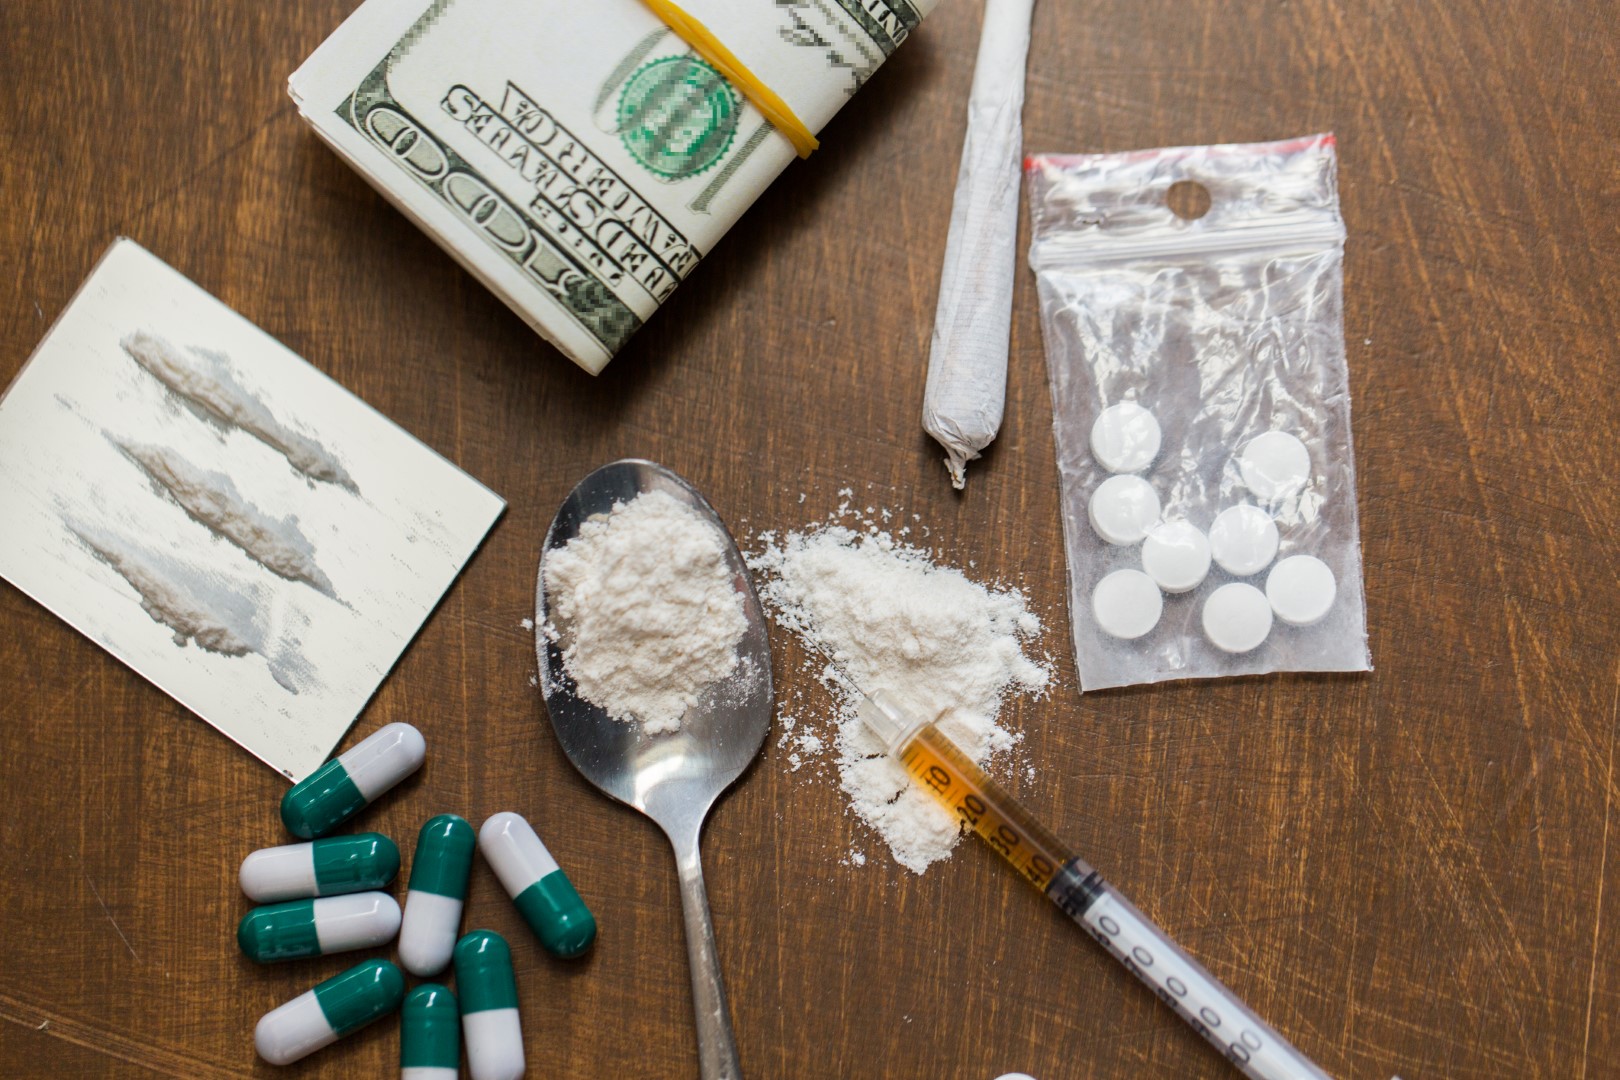 שימוש בסמים, פשיעה התמכרות ושימוש לרעה בסמים